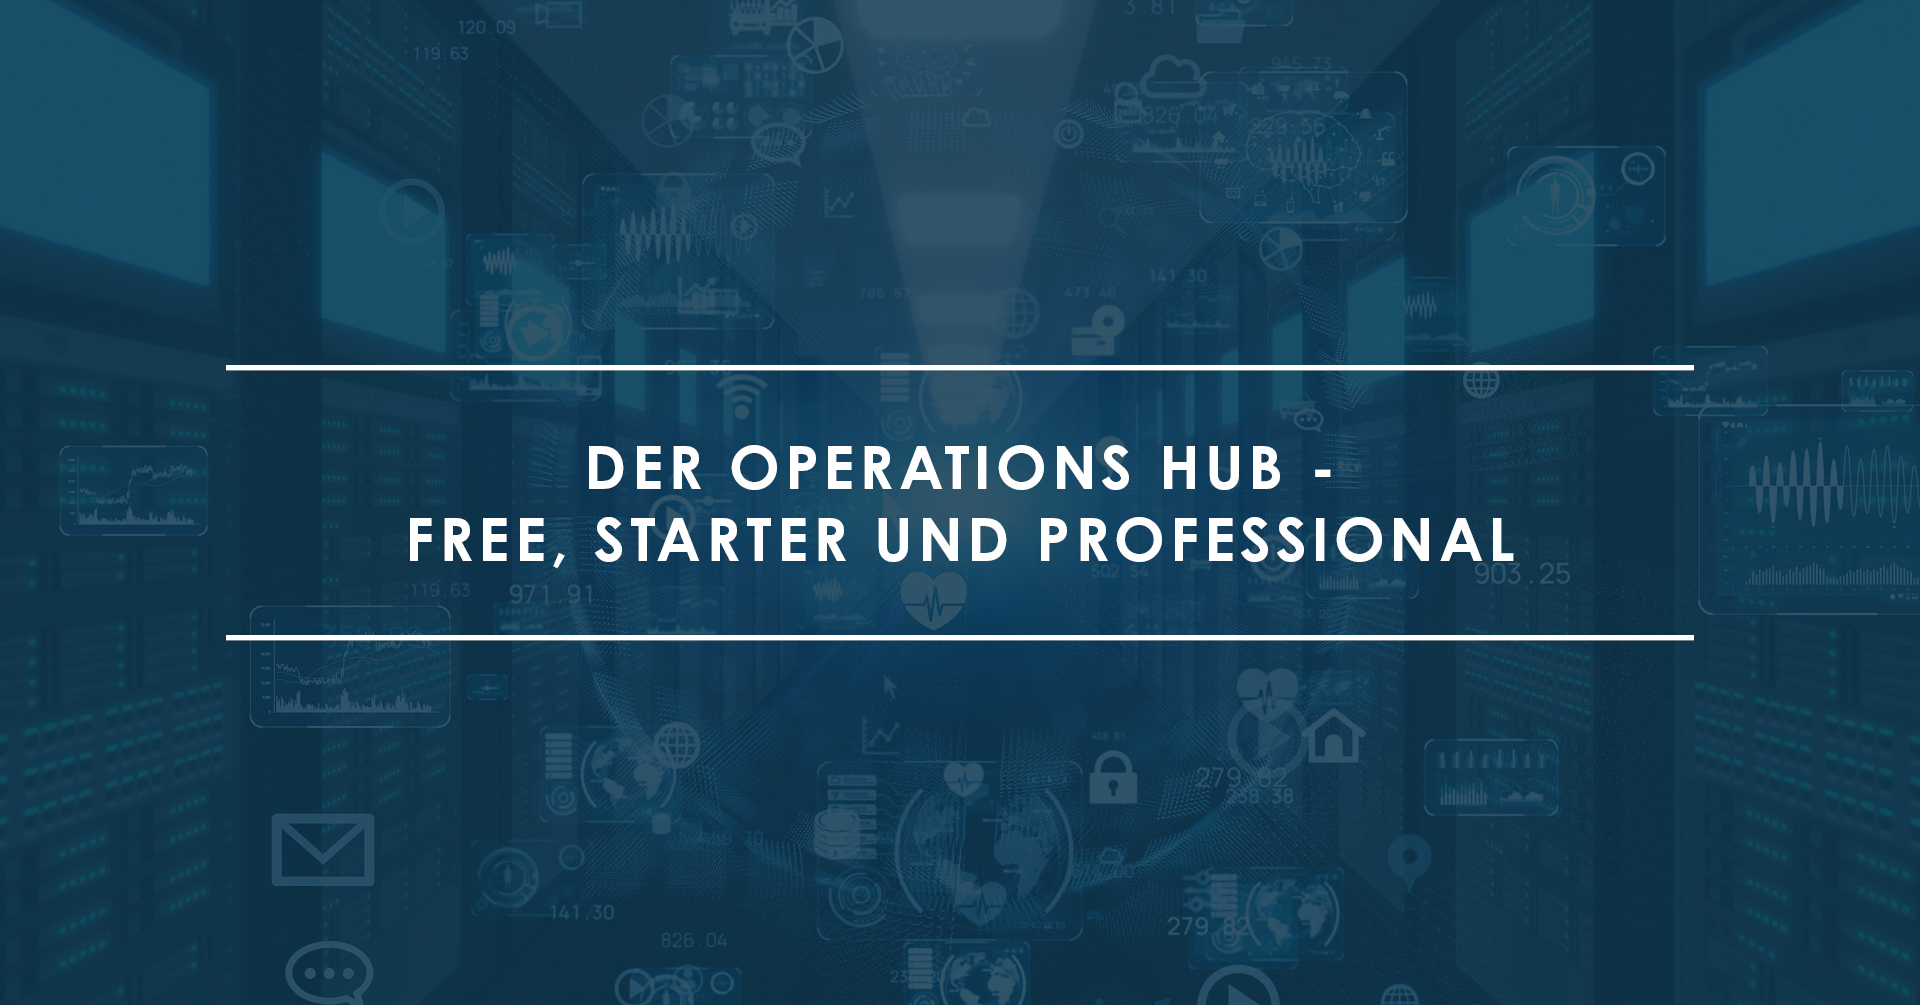 Der Operations Hub von HubSpot, free, starter und professional